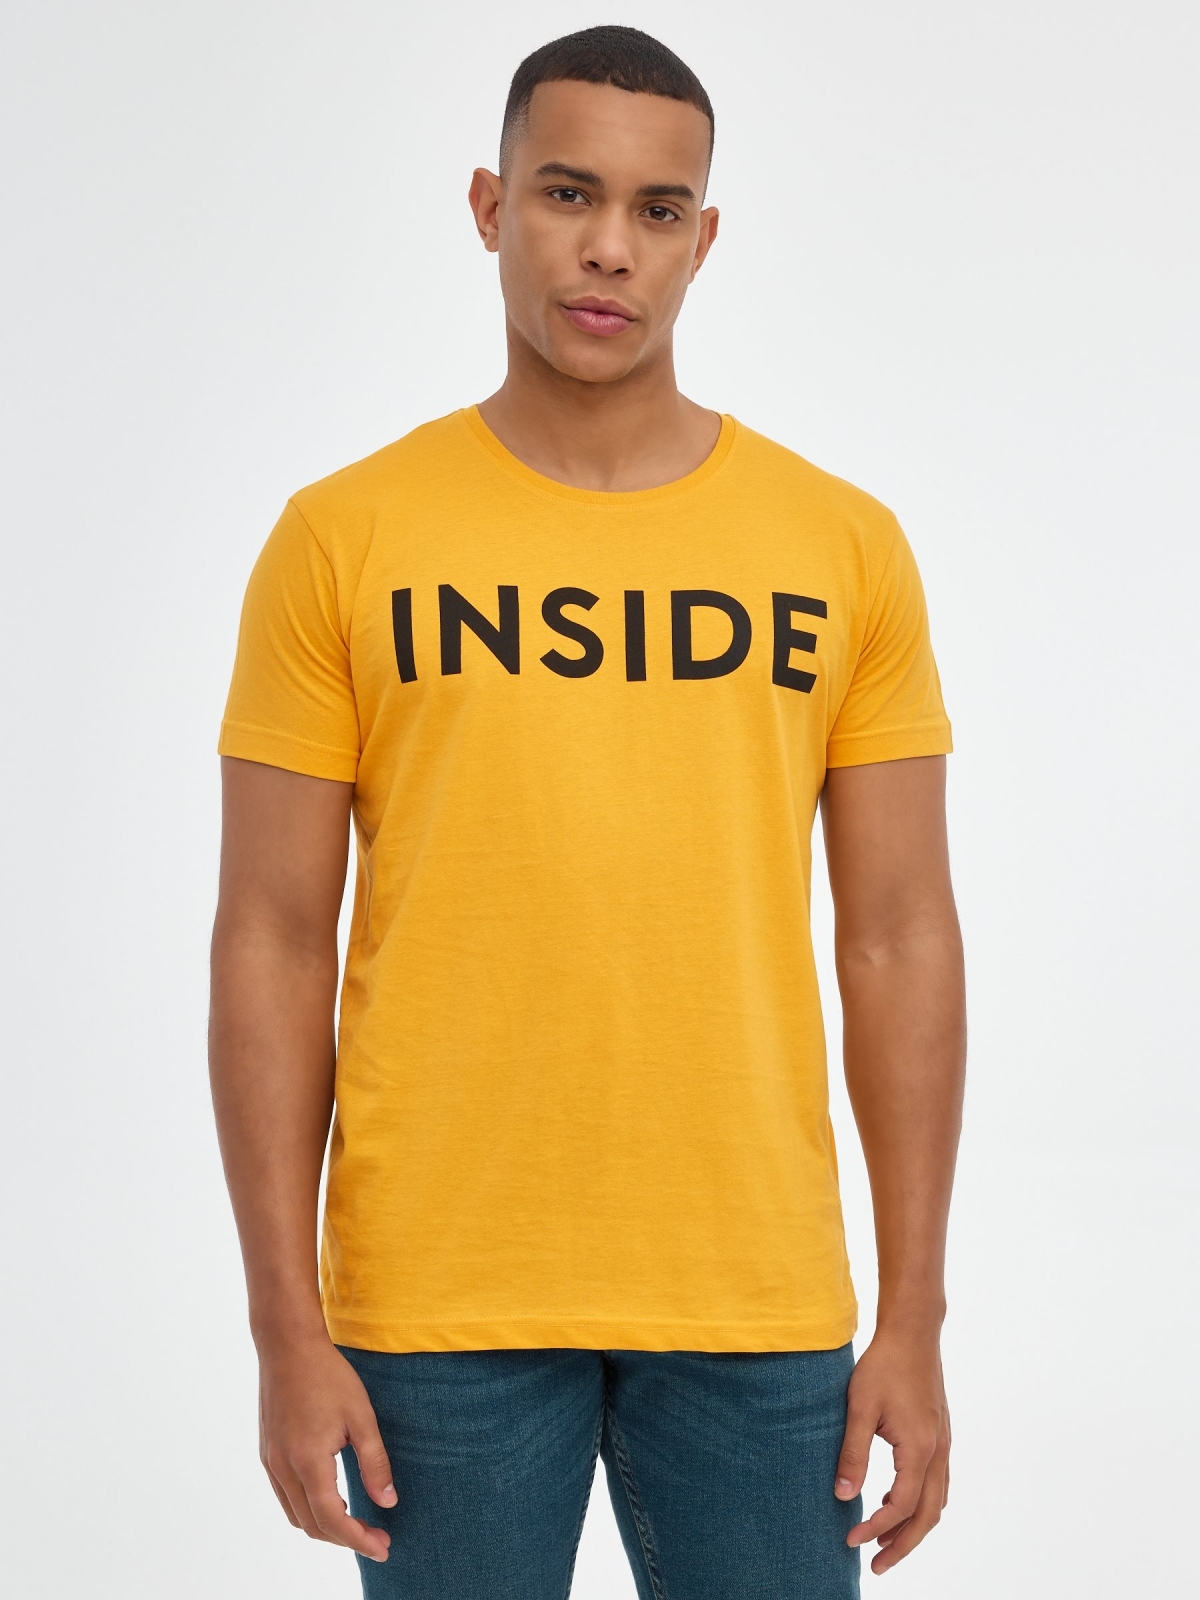 Camiseta básica "INSIDE" ocre vista media frontal